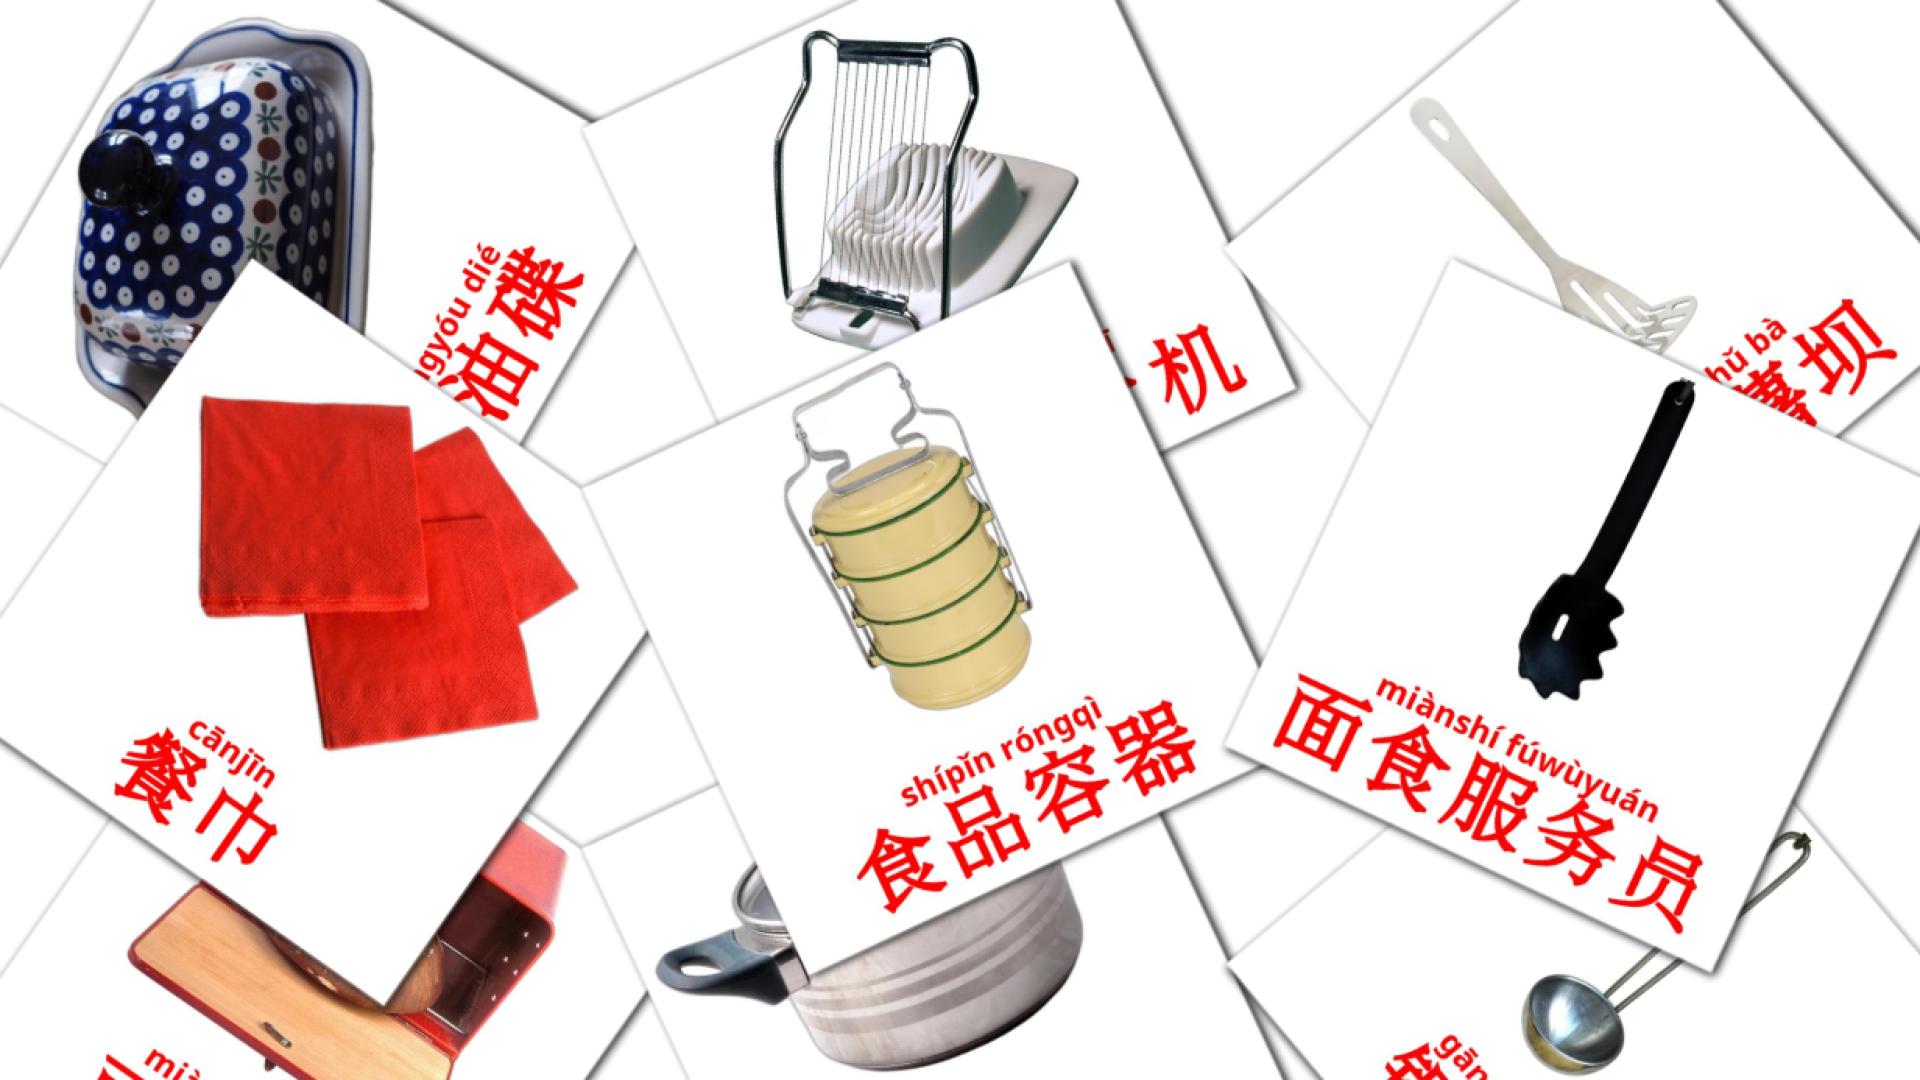 Карточки Домана 厨房房间 на китайский(Упрощенный) языке